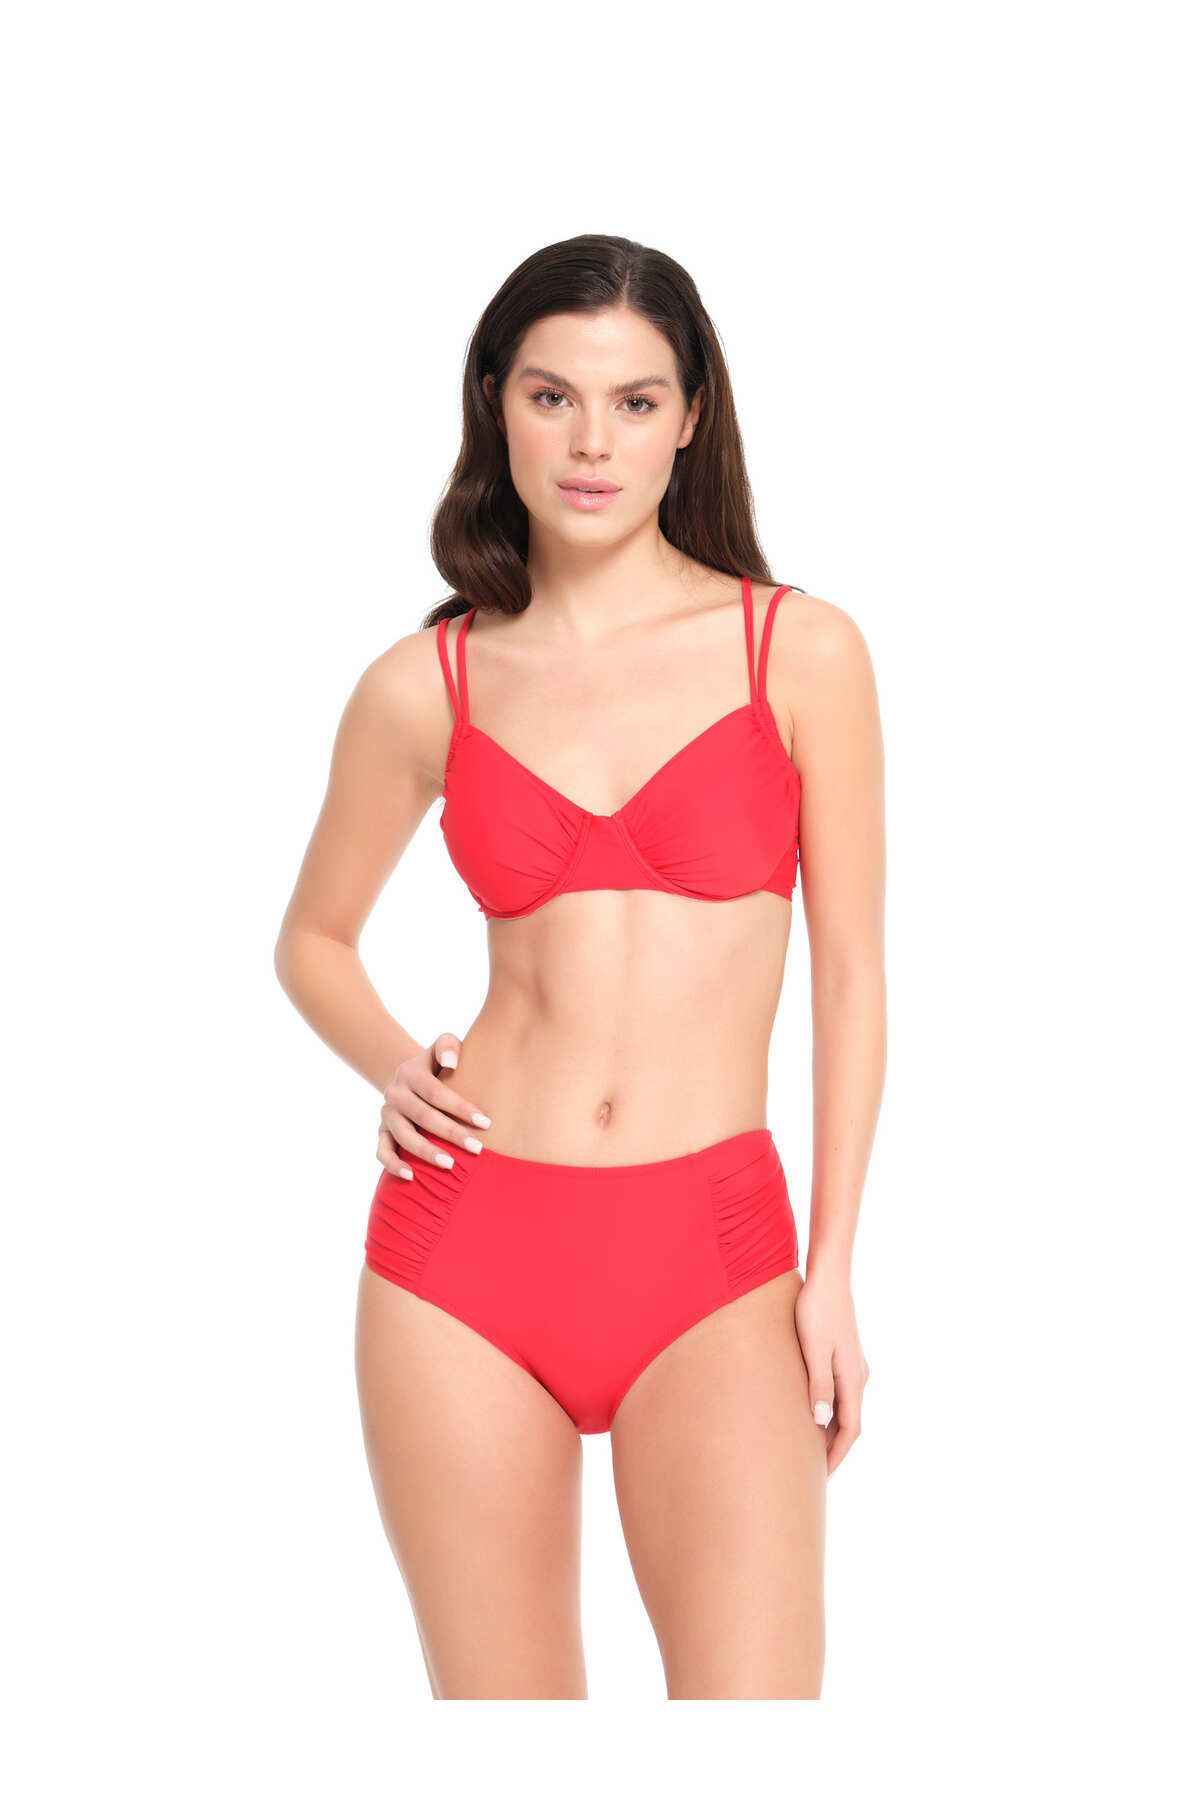 TOO SALTY SWIMWEAR Kadın Kırmızı Düz Balenli Toparlayıcı Yüksek Bel Bikini Takımı 23s102st